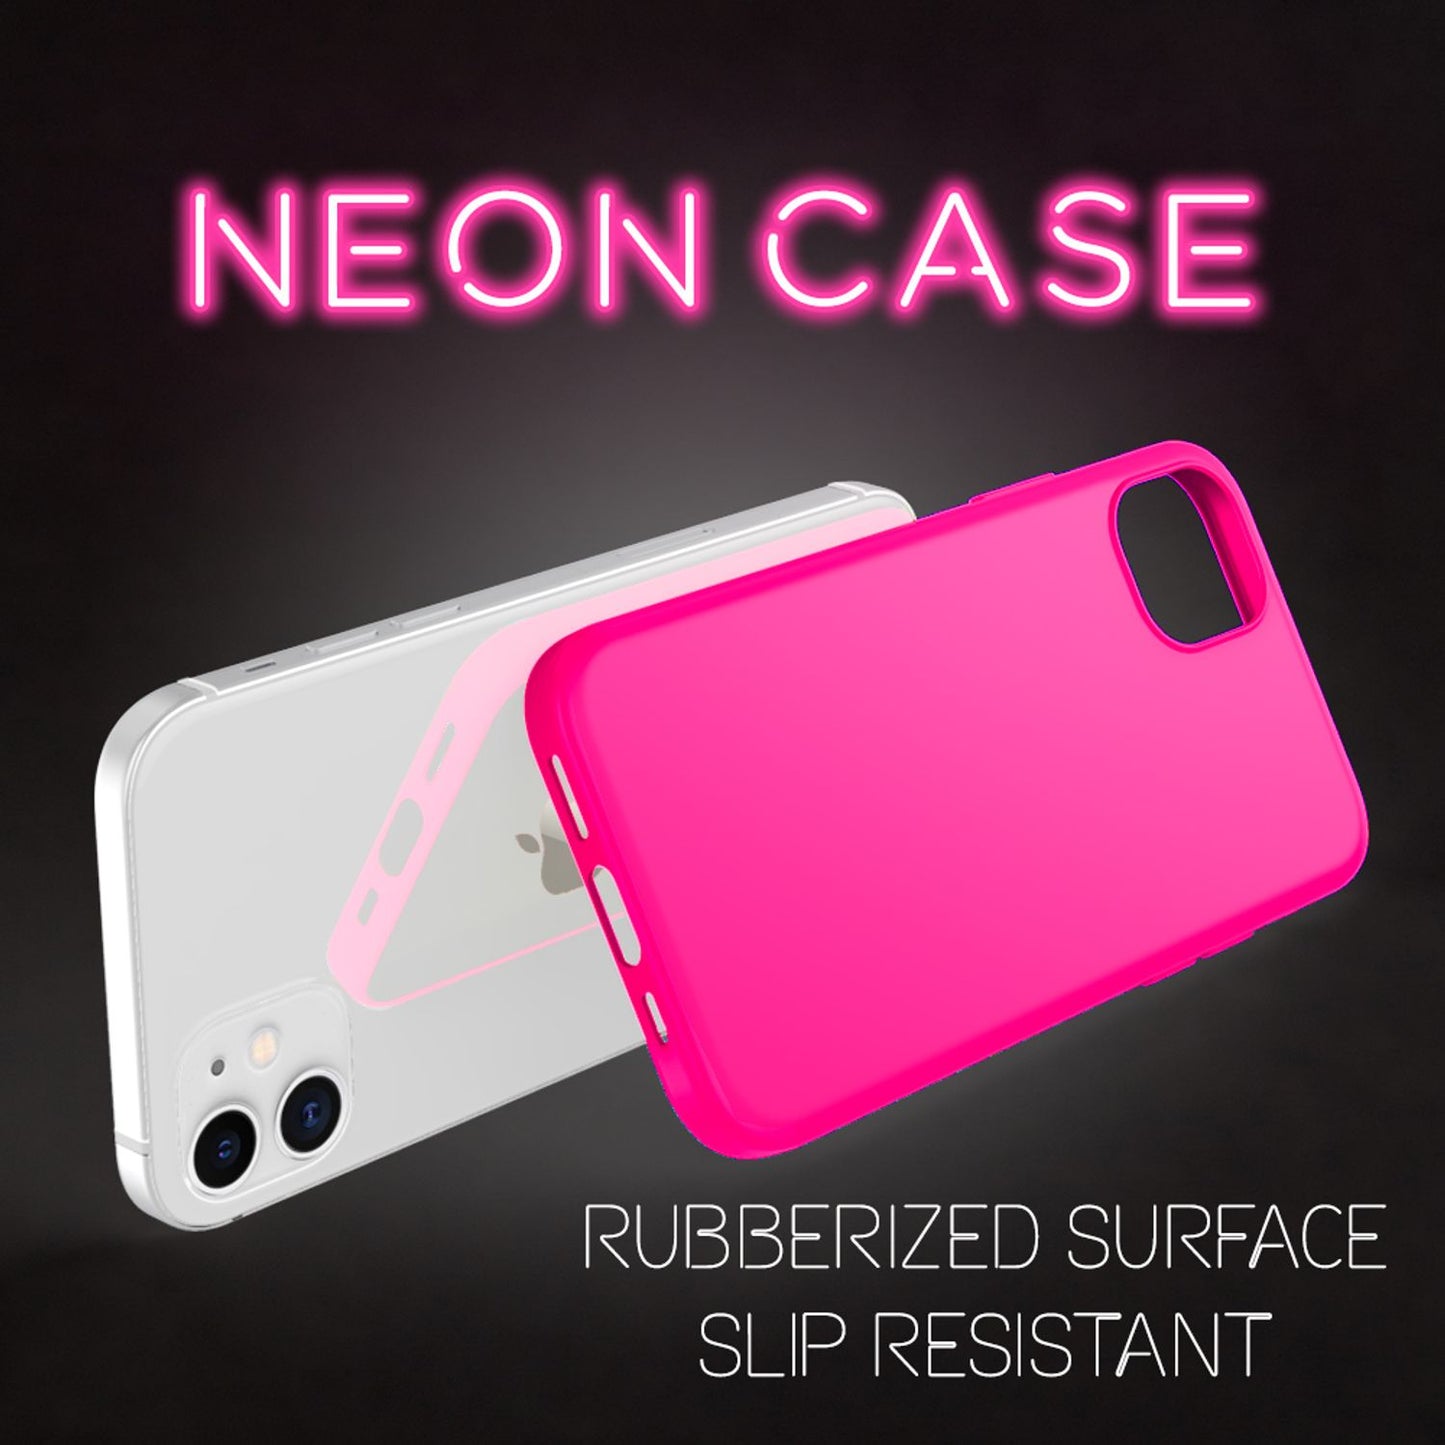 NALIA Neon Handy Hülle für iPhone 12 mini, Slim Case Cover Schutz Tasche Bumper